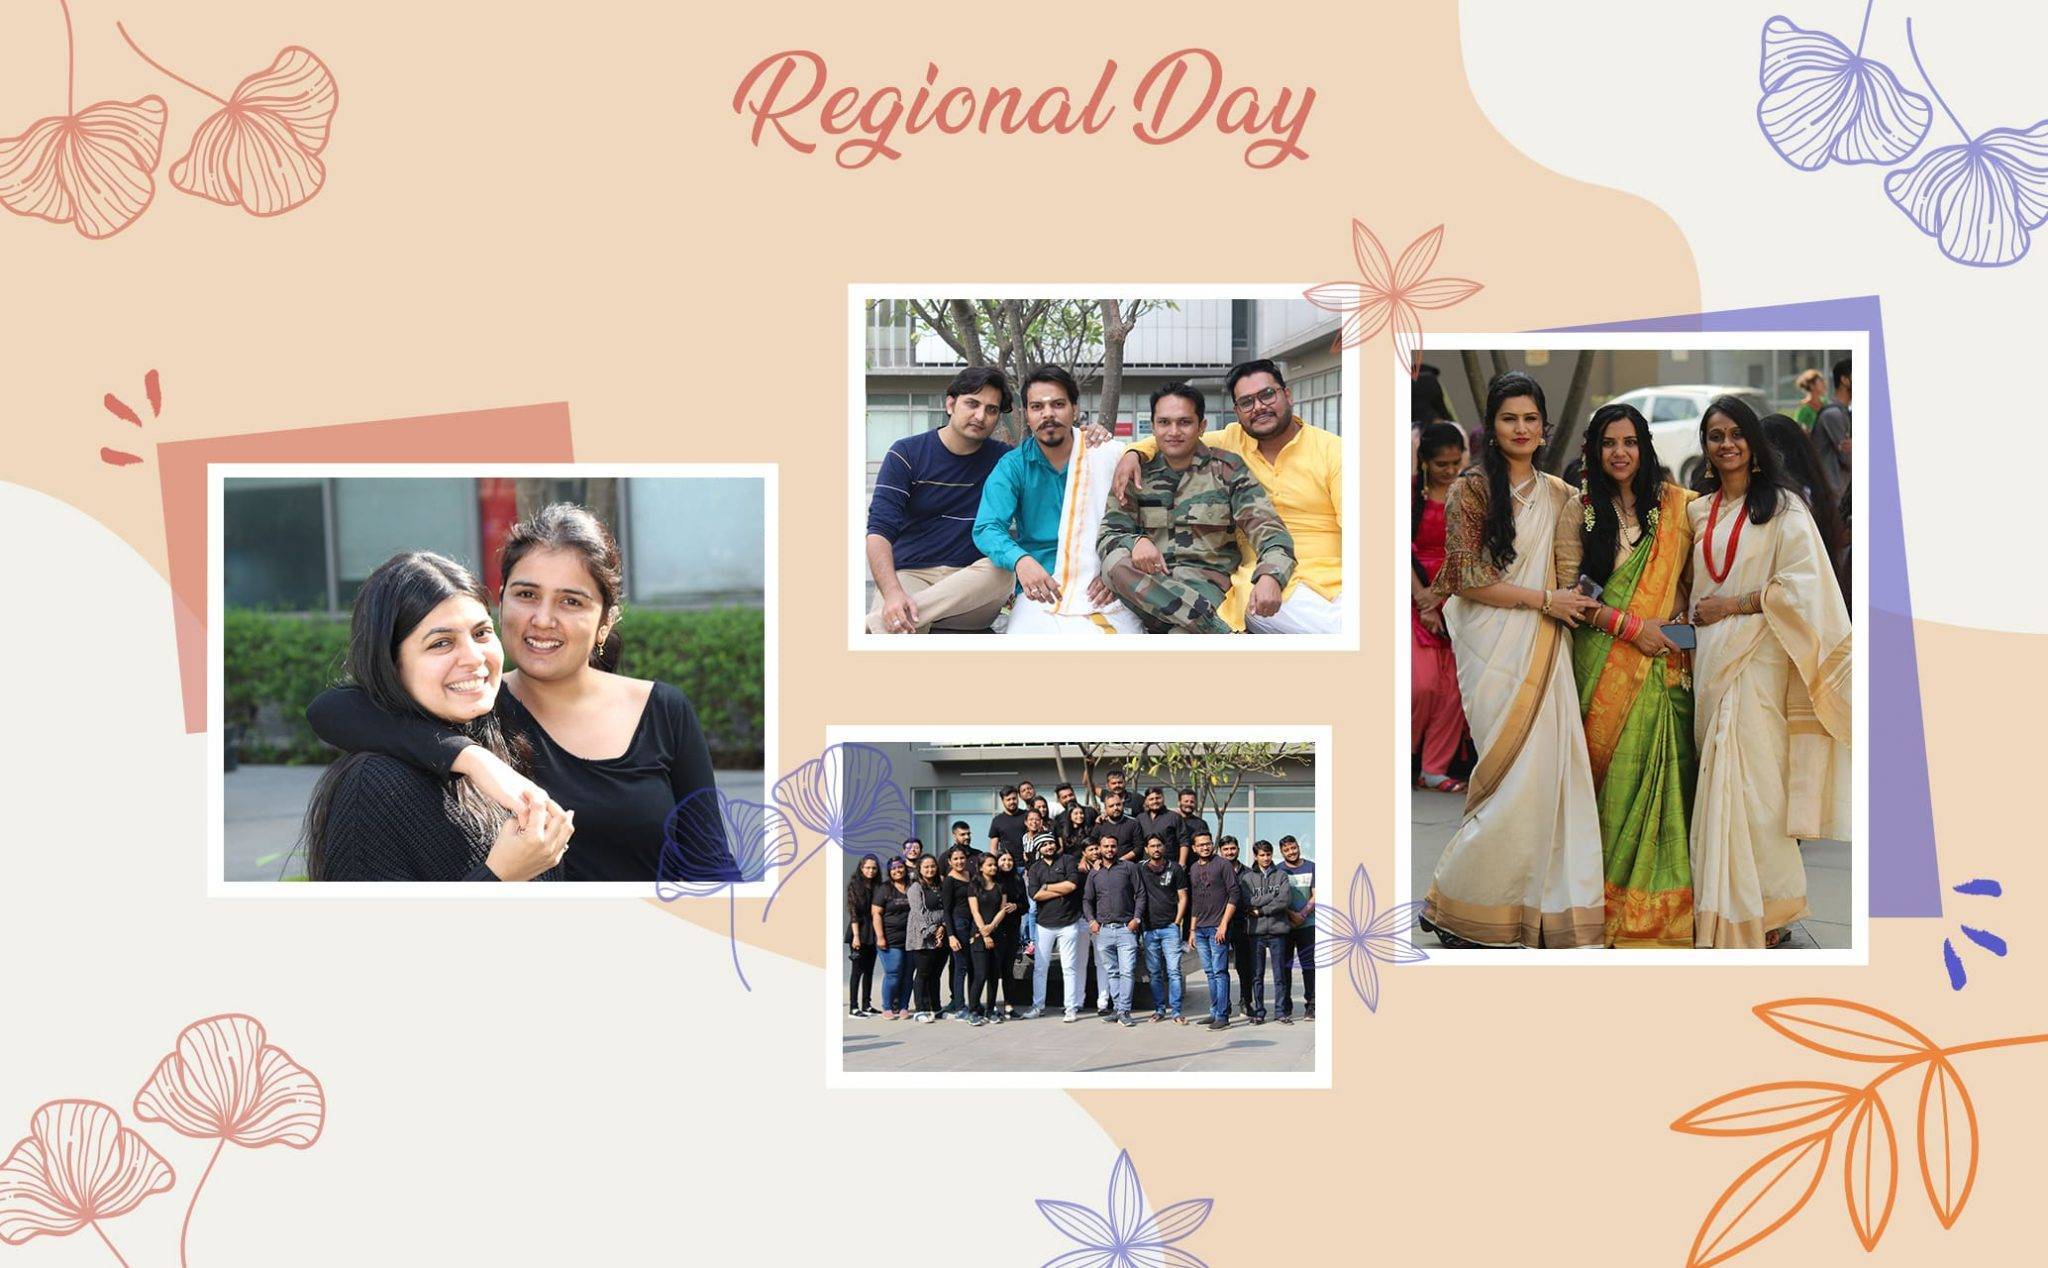 Regional Day's